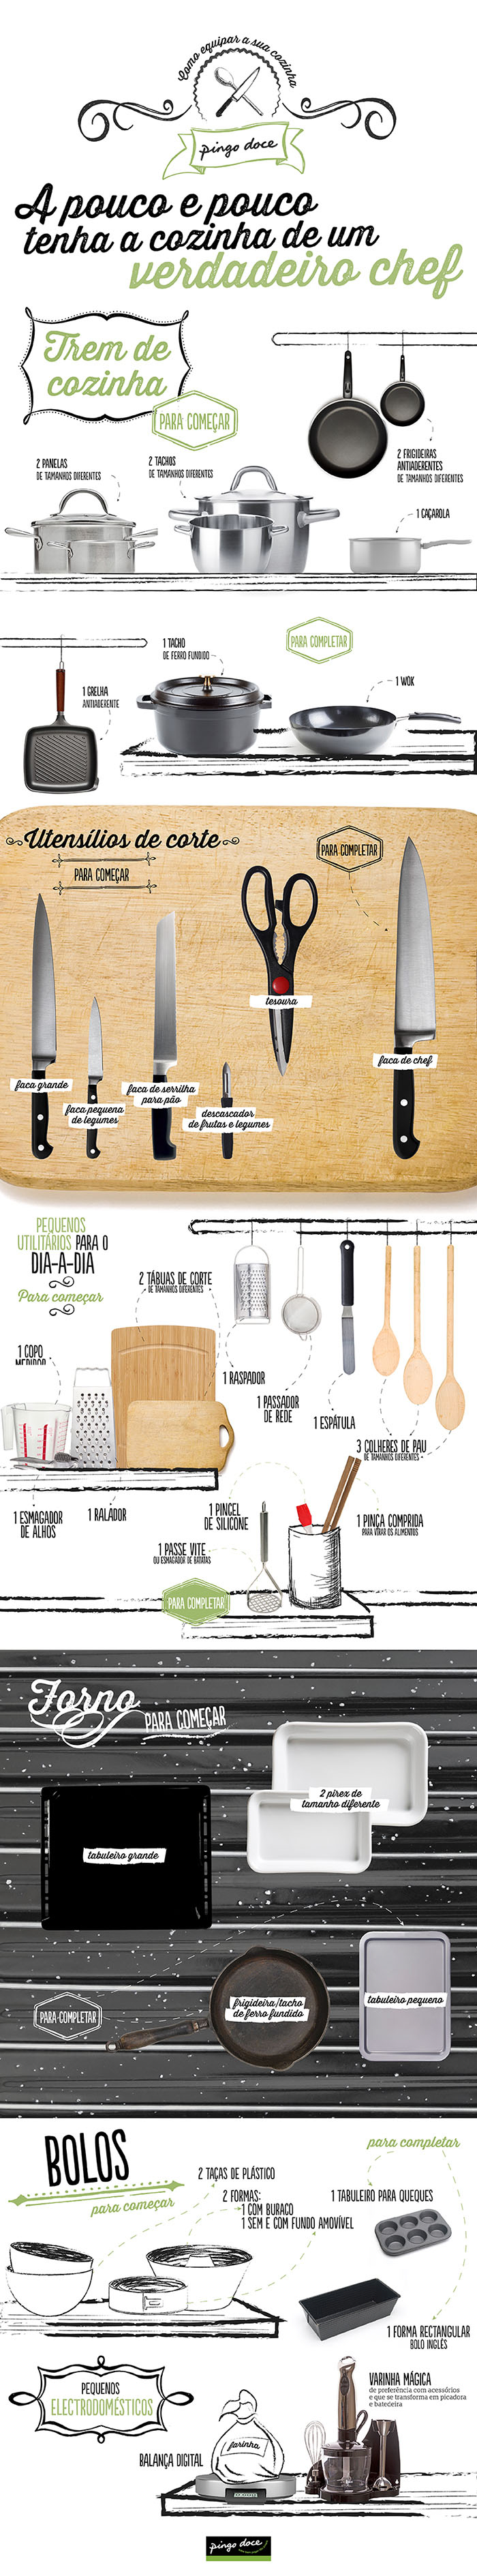 infografia como equipar a cozinha: facas, panelas, frigideiras, tesouras, balança...